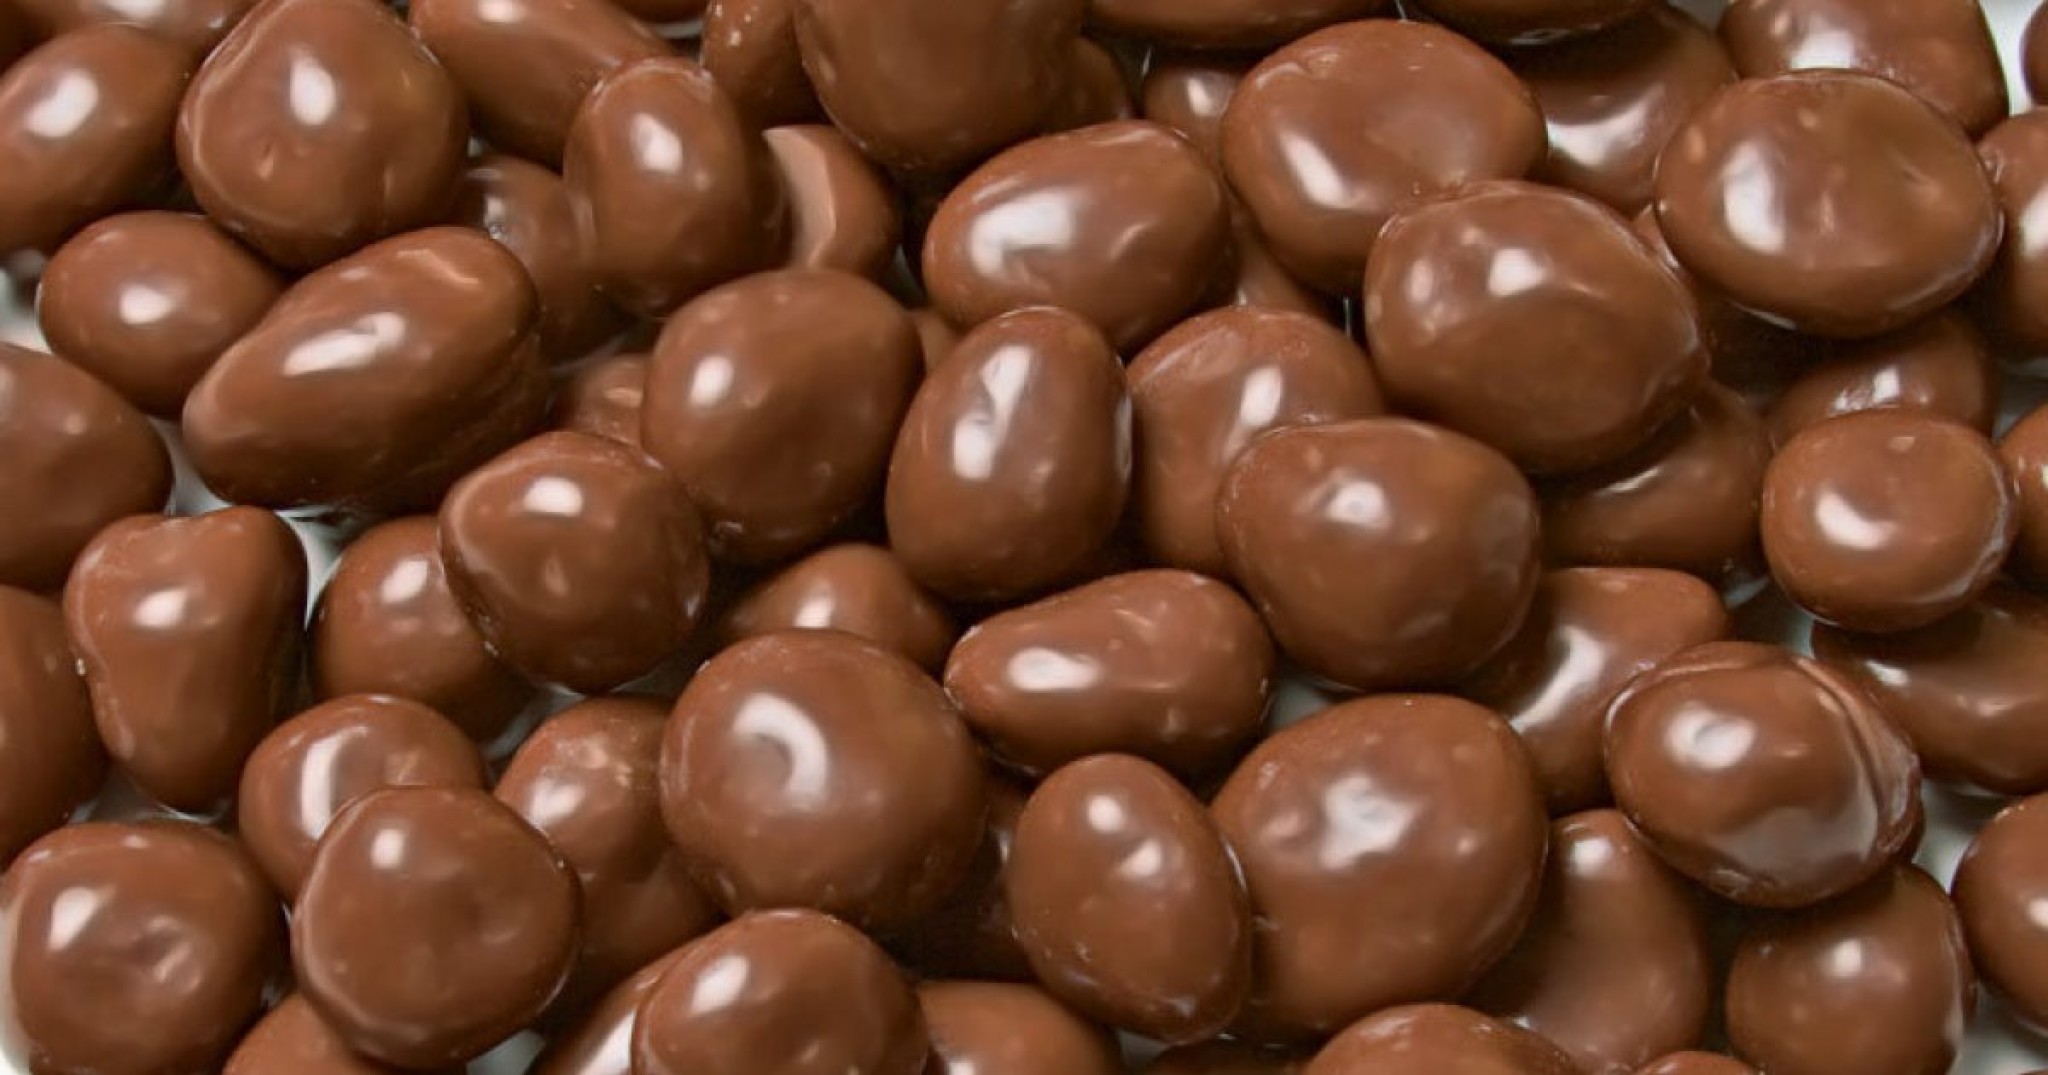 large-choc-raisins.jpg